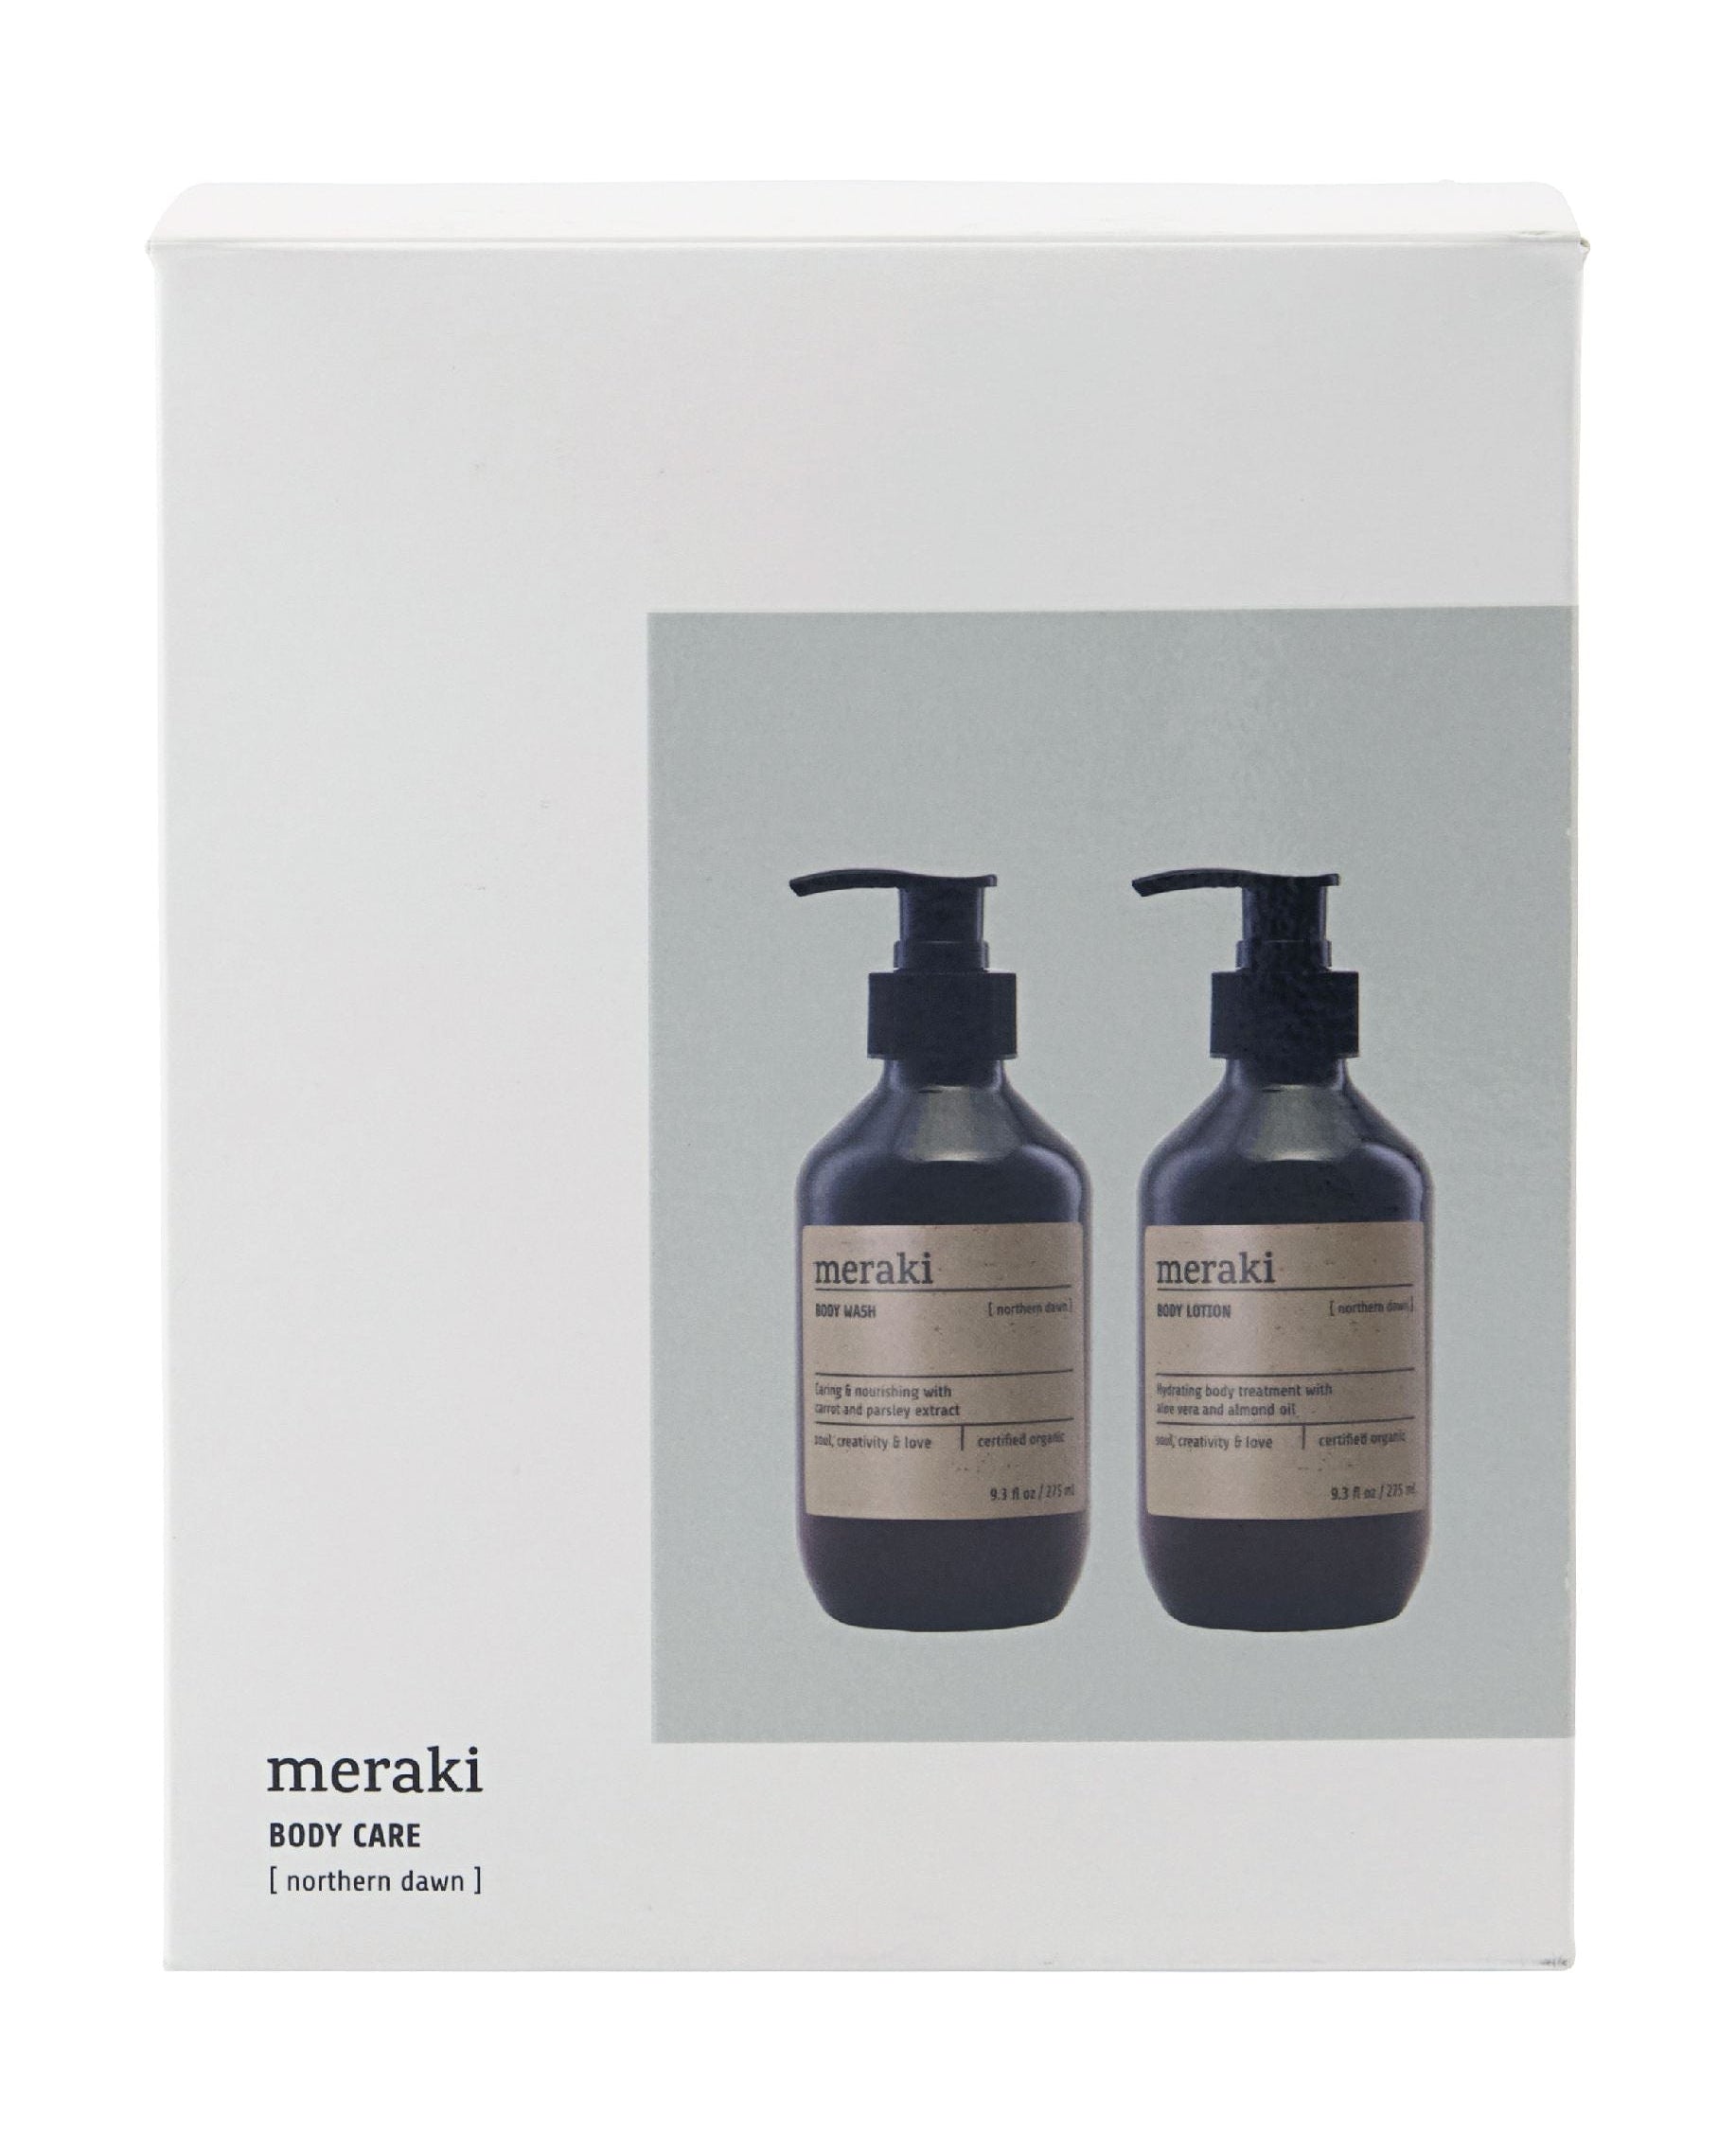 Meraki Body Care Gift Box 275/275 Ml, Northern Dawn